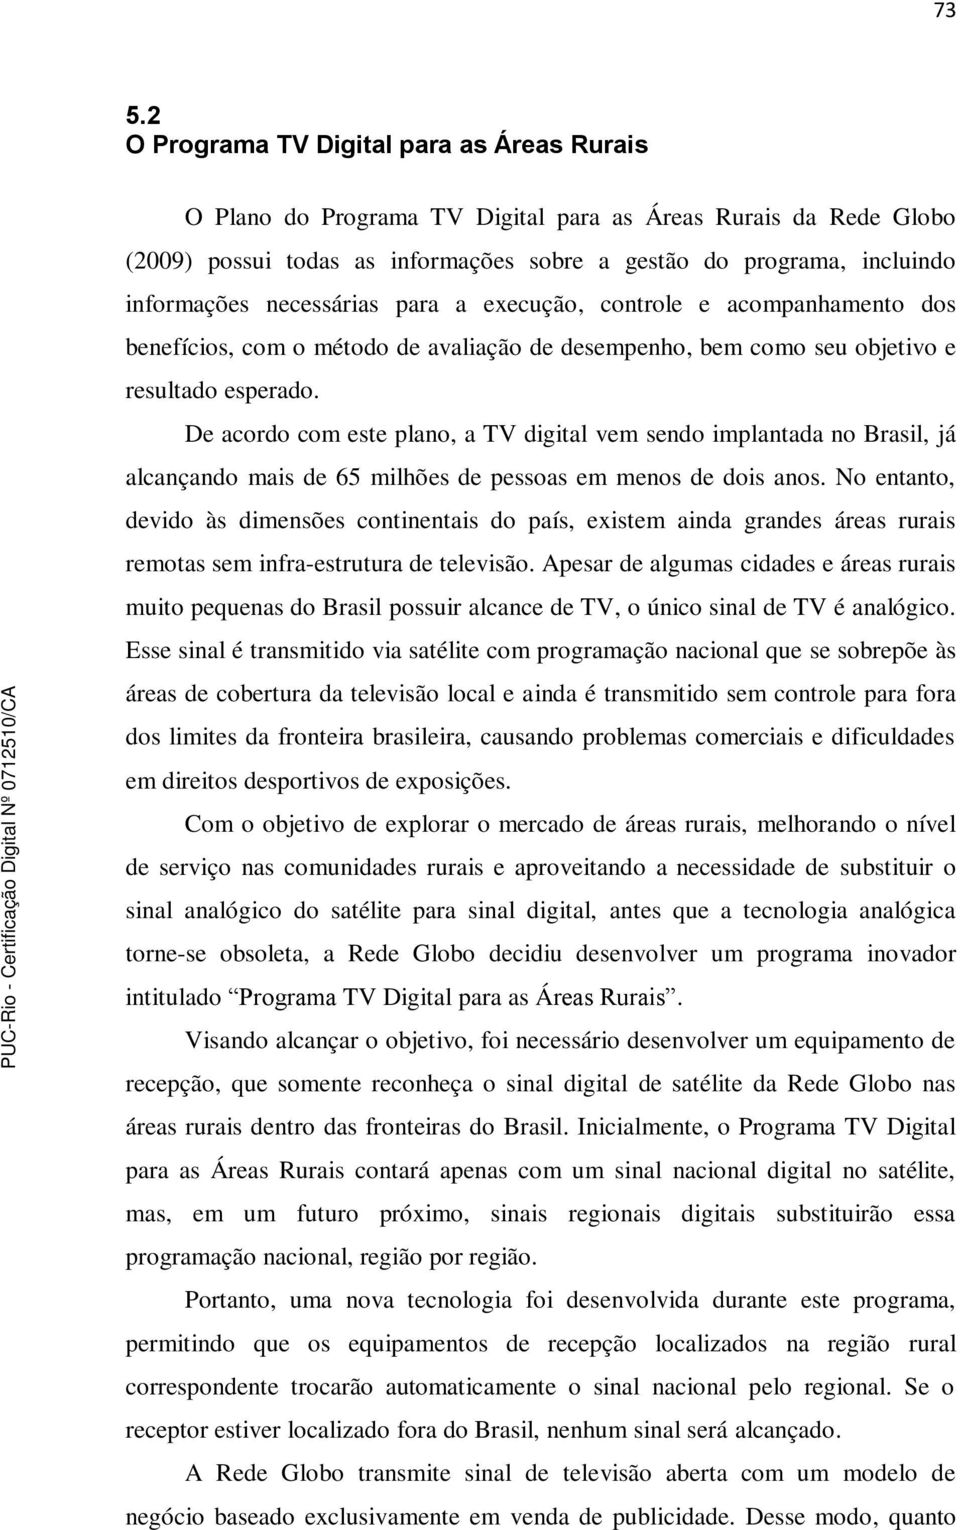 De acordo com este plano, a TV vem sendo implantada no Brasil, já alcançando mais de 65 milhões de pessoas em menos de dois anos.